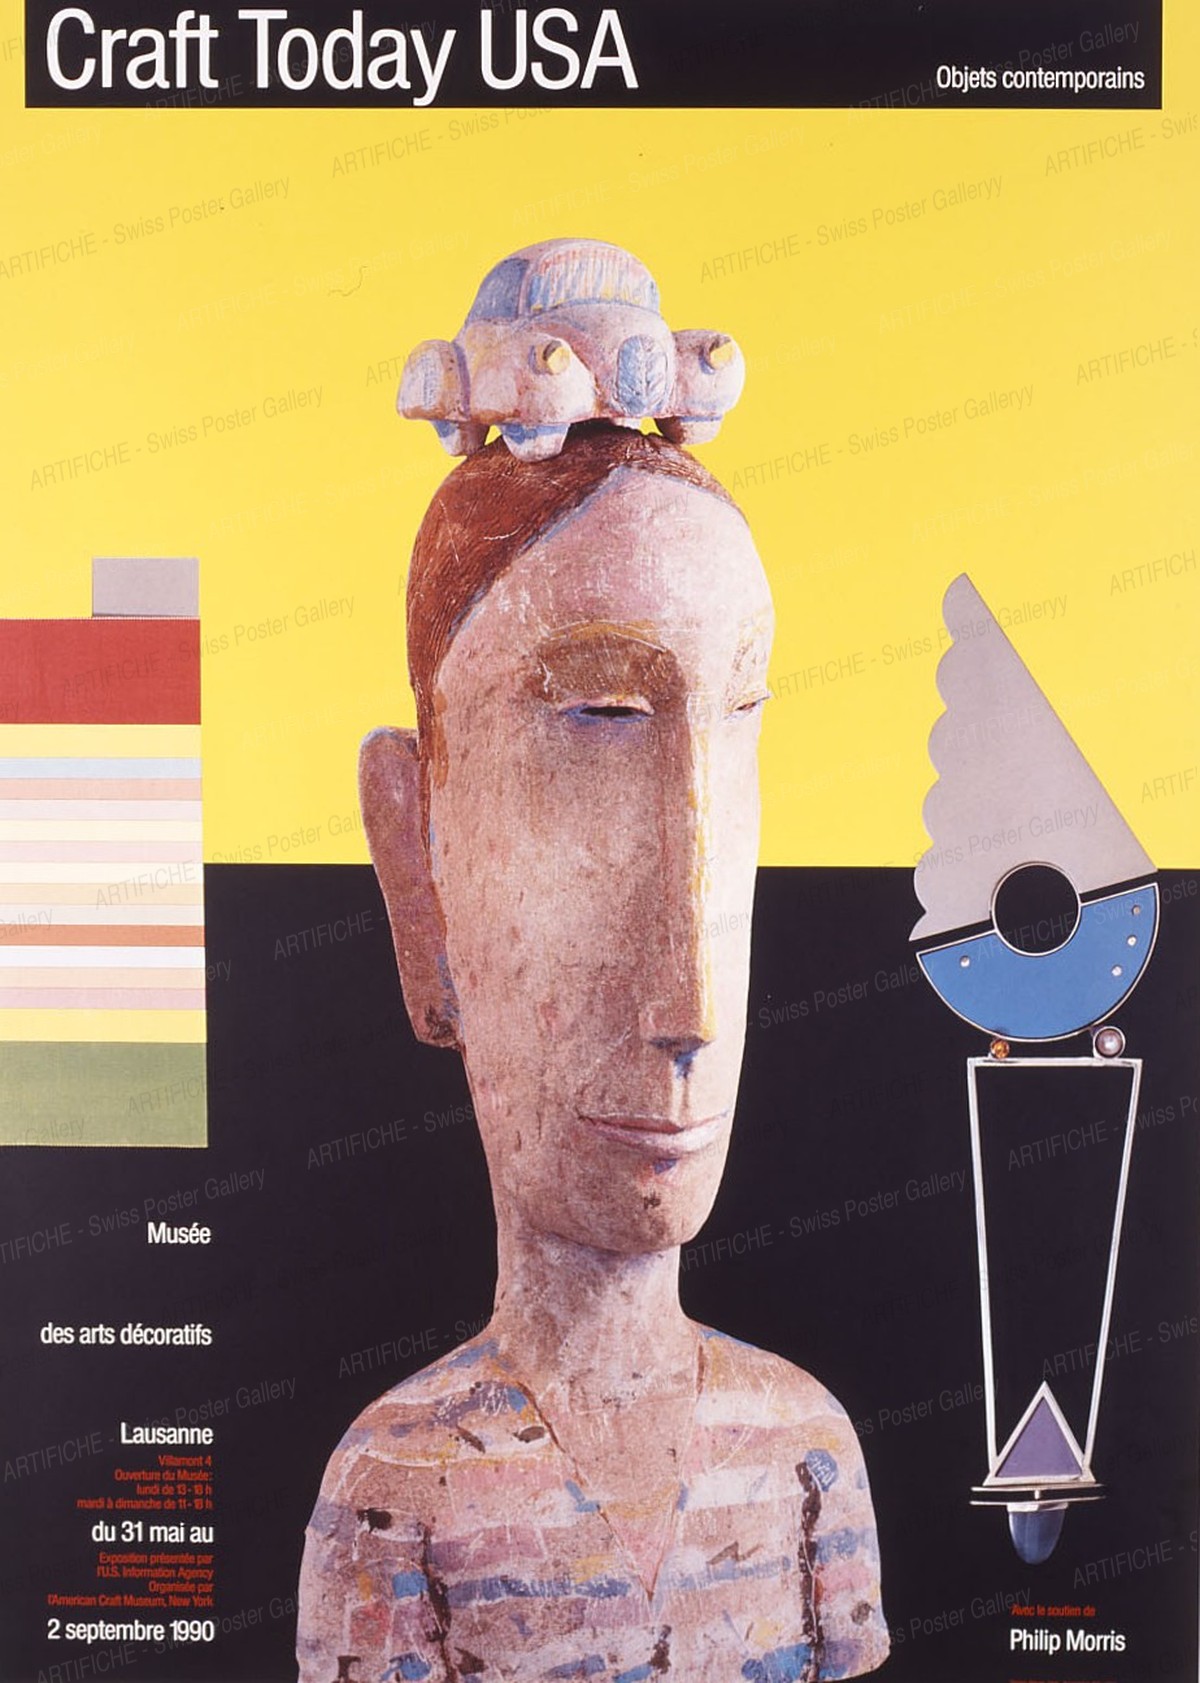 Craft Today USA – Objects contemporains – Musée des arts décoratifs Lausanne, Werner Jeker